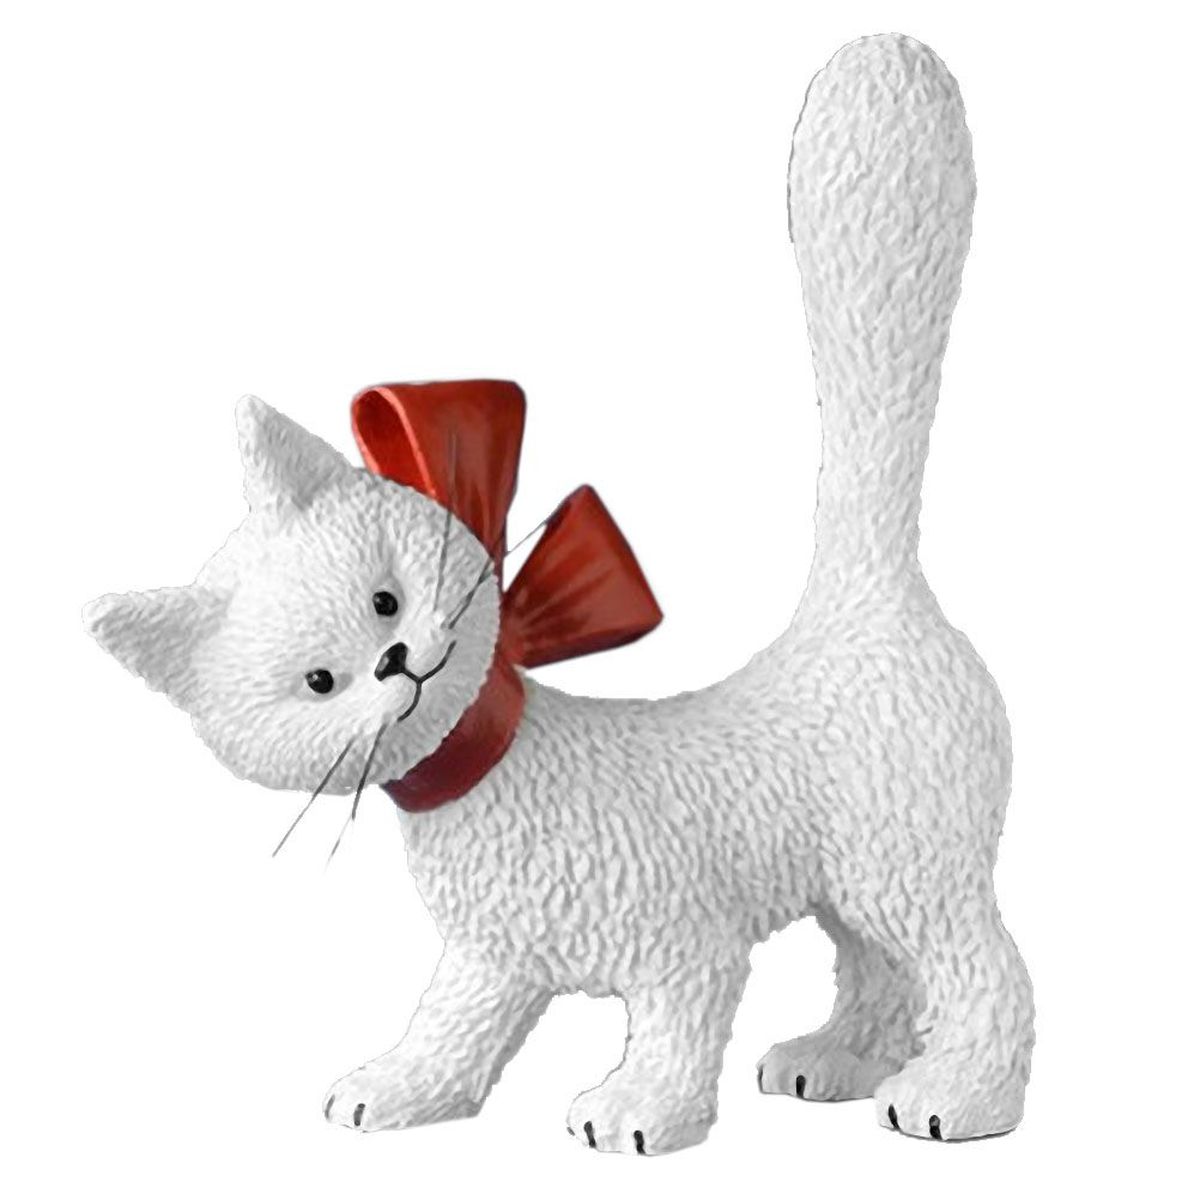 Figurine Les chats de Dubout - Mignonette blanche avec noeud